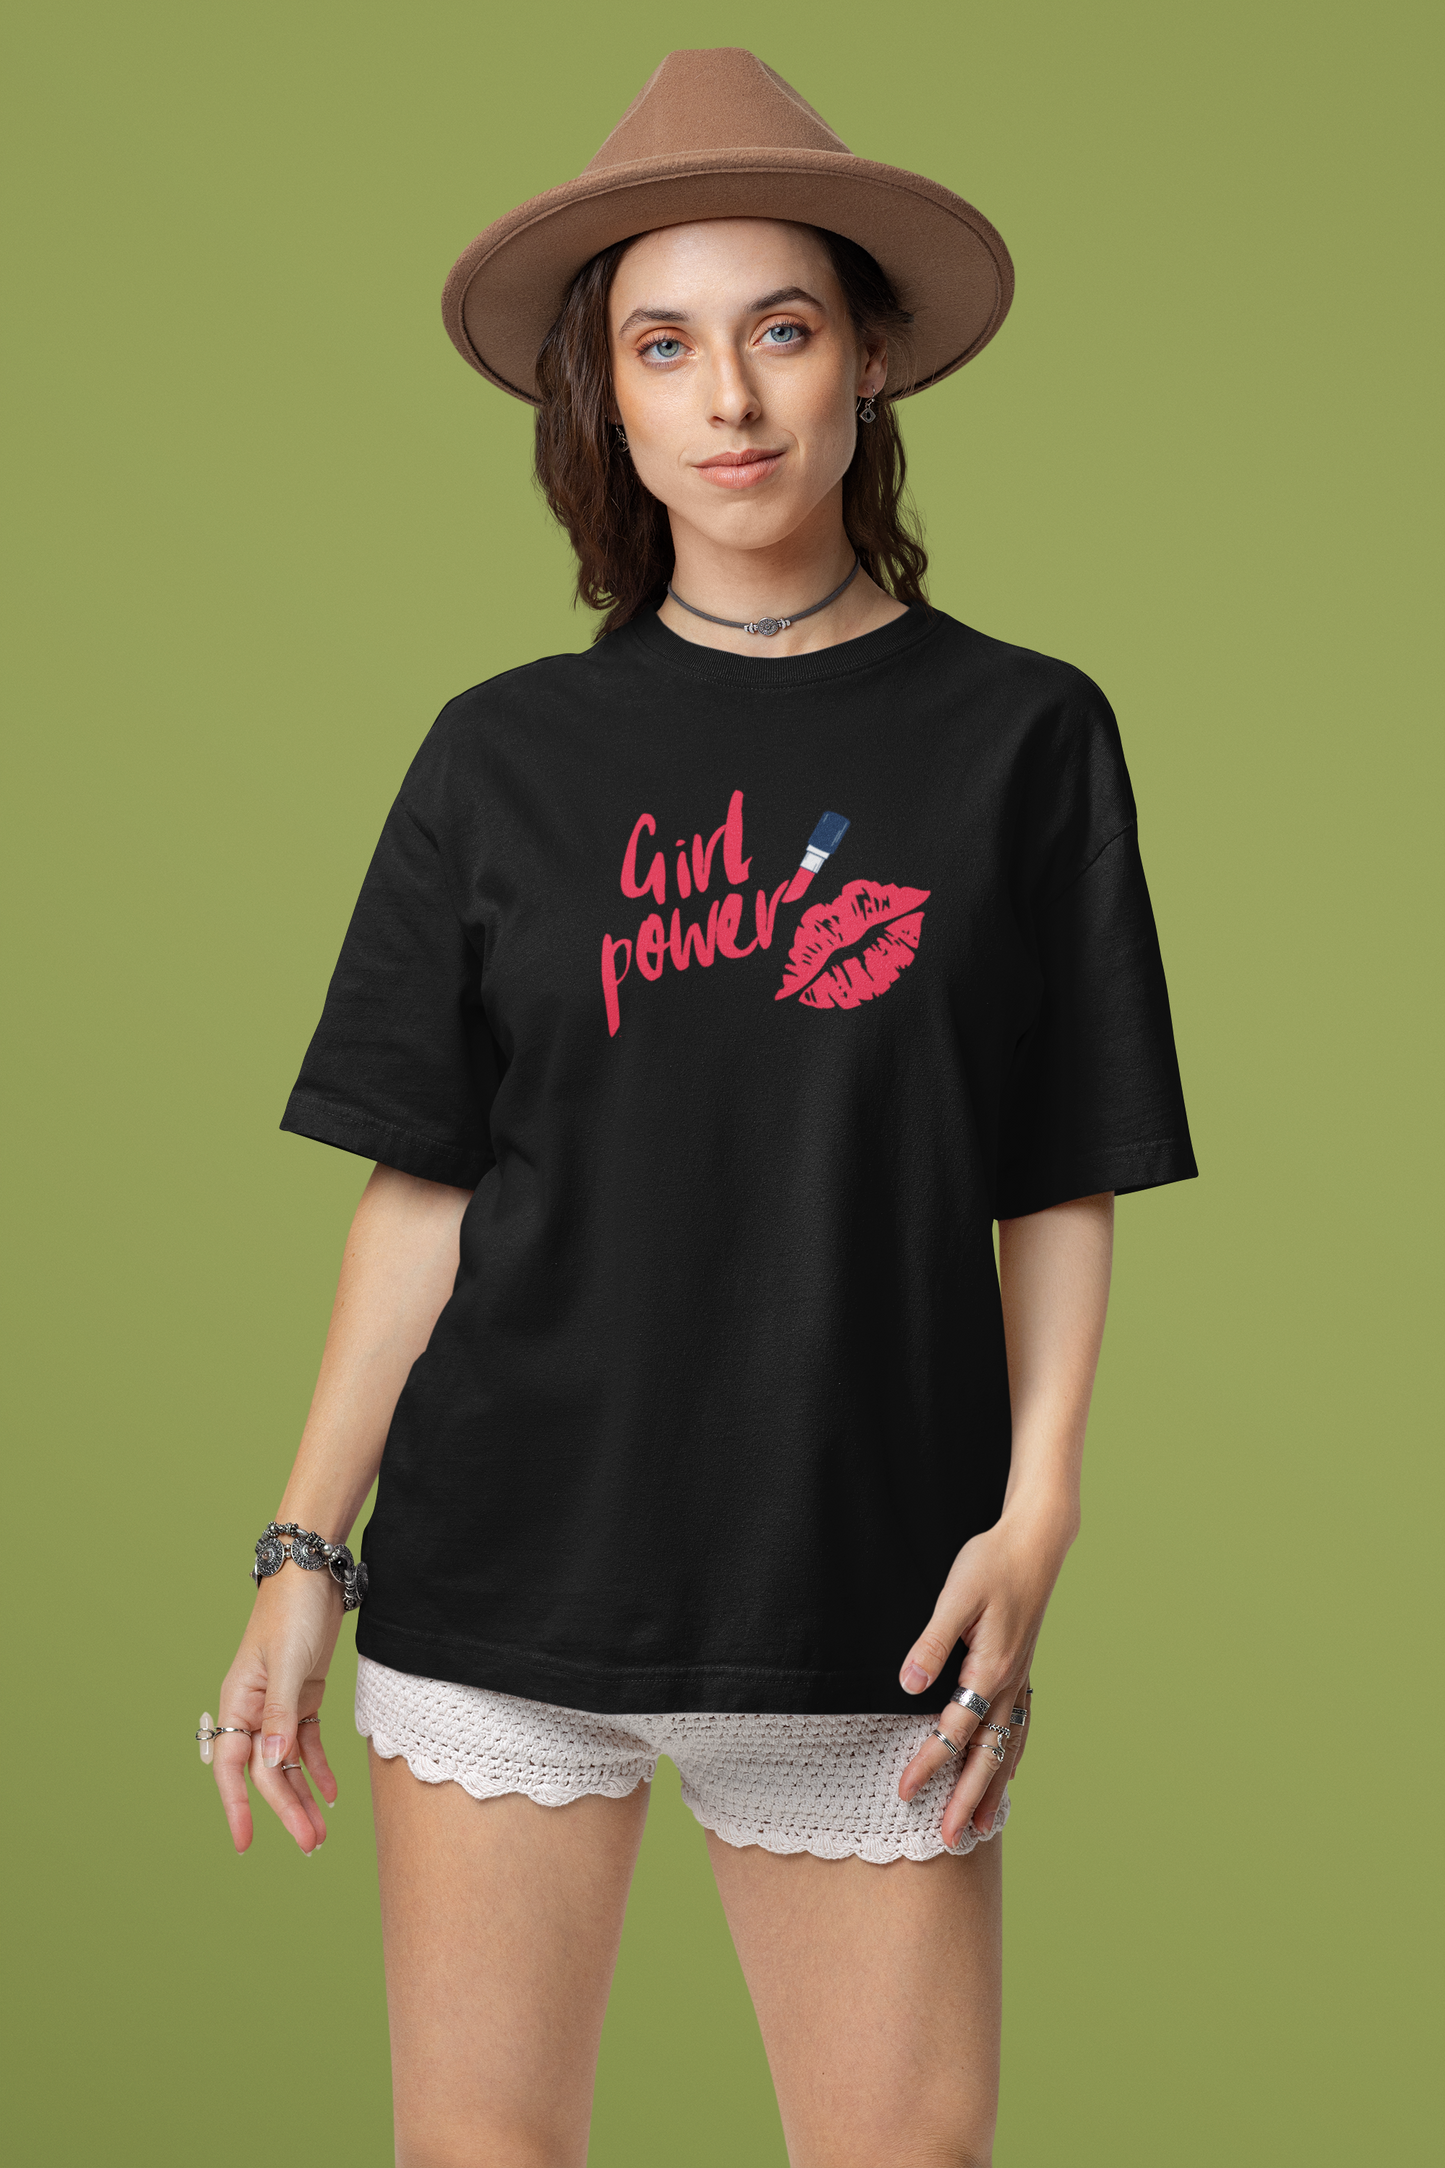 Bilkool Girl Power Oversized T-Shirt Design for Women